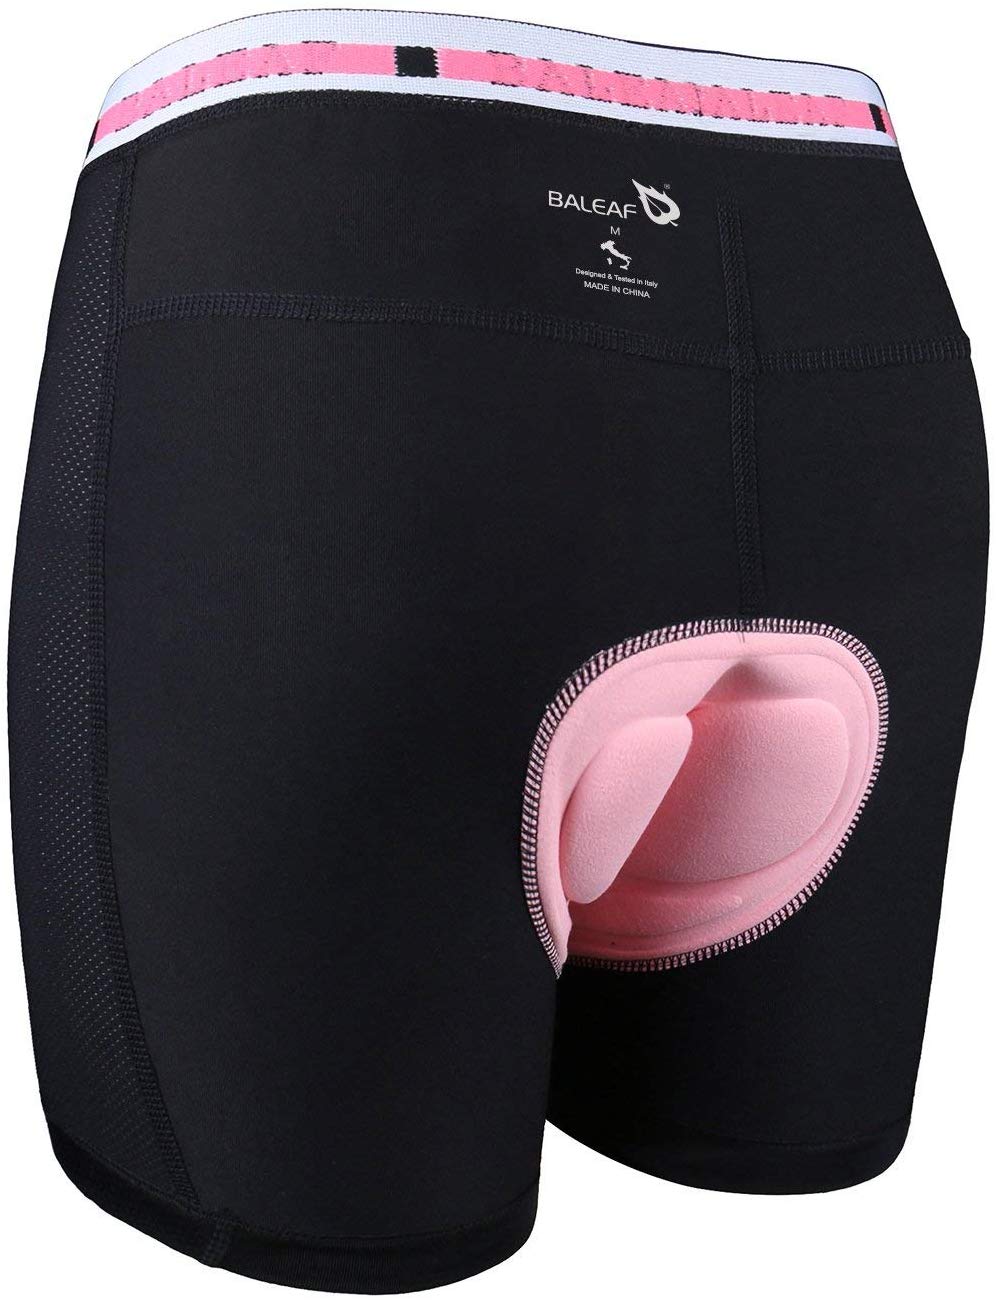 Baleaf Women's 3-inch Cycling Underwear